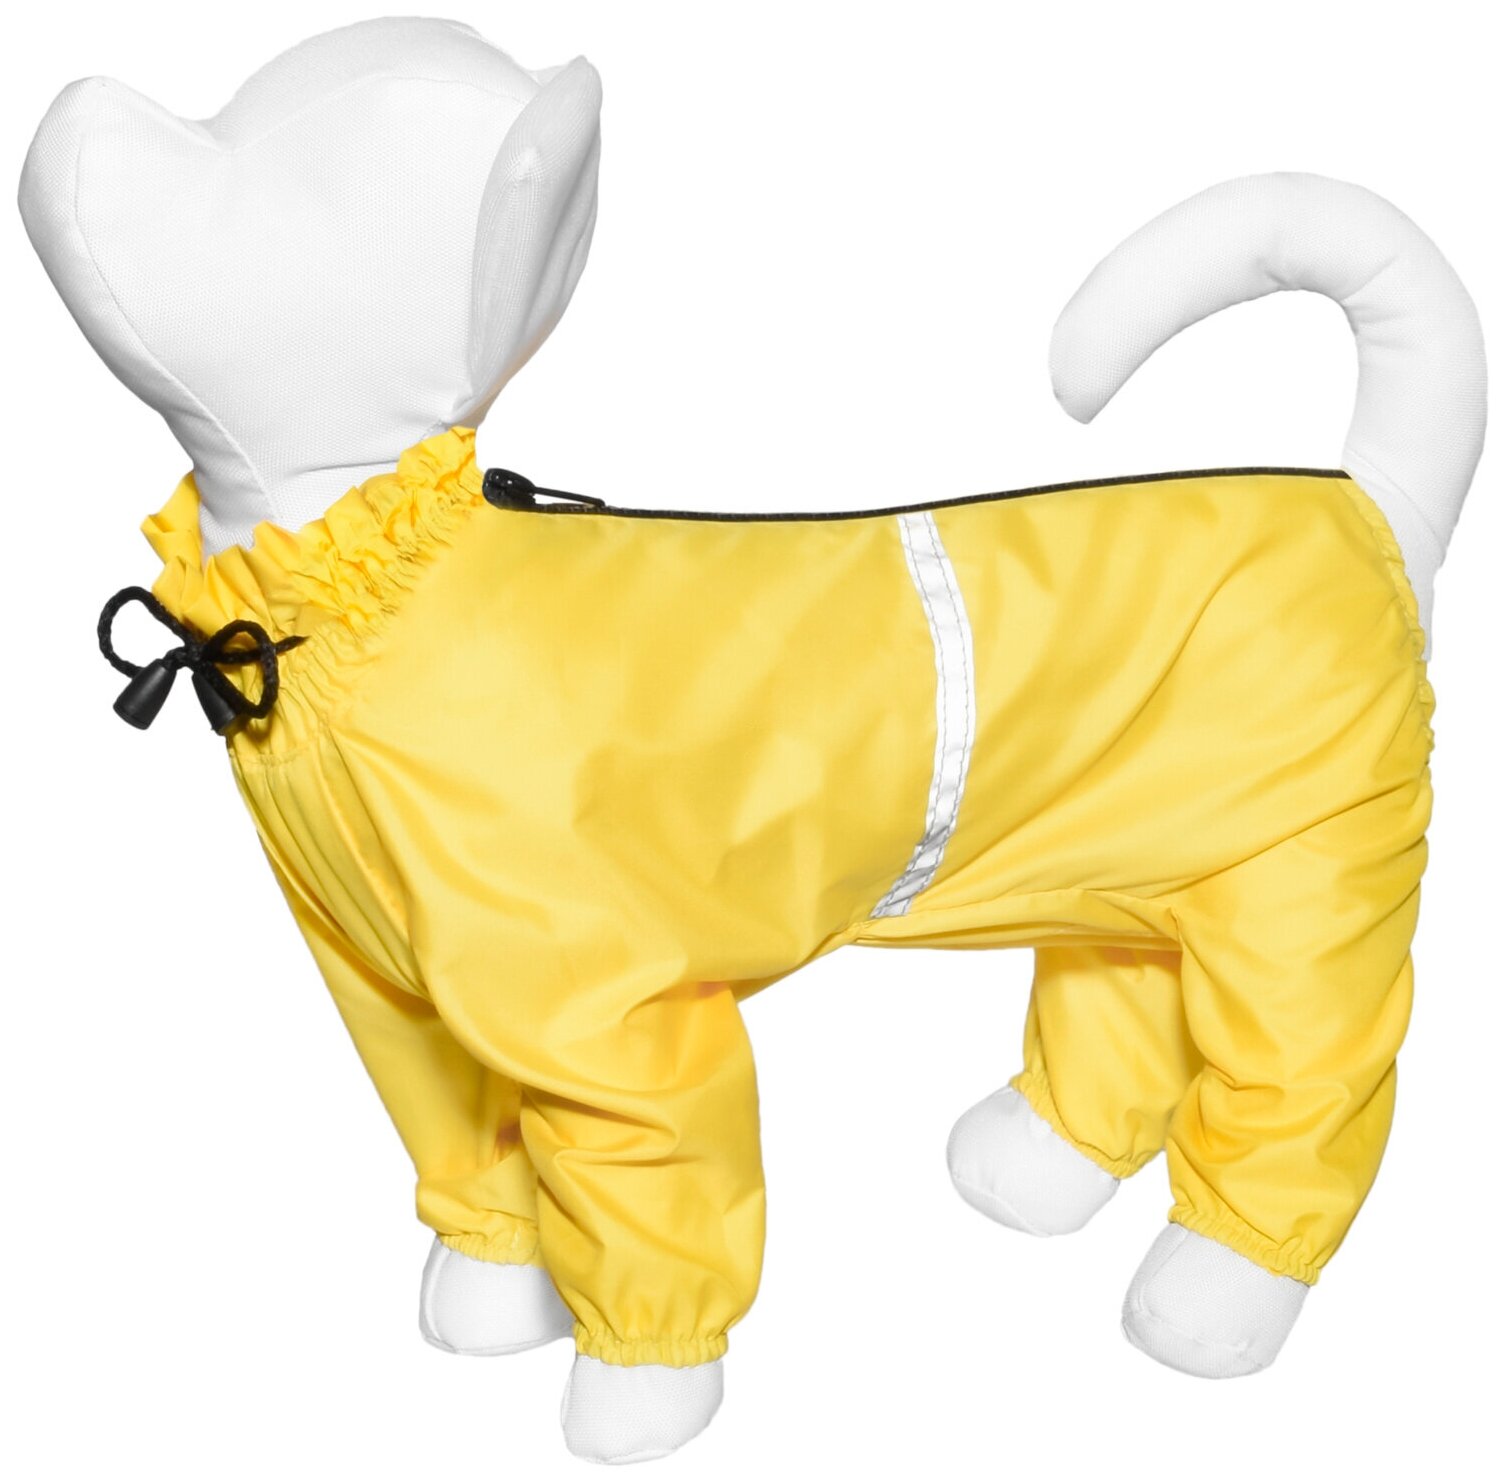 Yami-Yami одежда О. Дождевик для собак желтый джек-рассел 49201 0,1 кг 49201 - фотография № 1